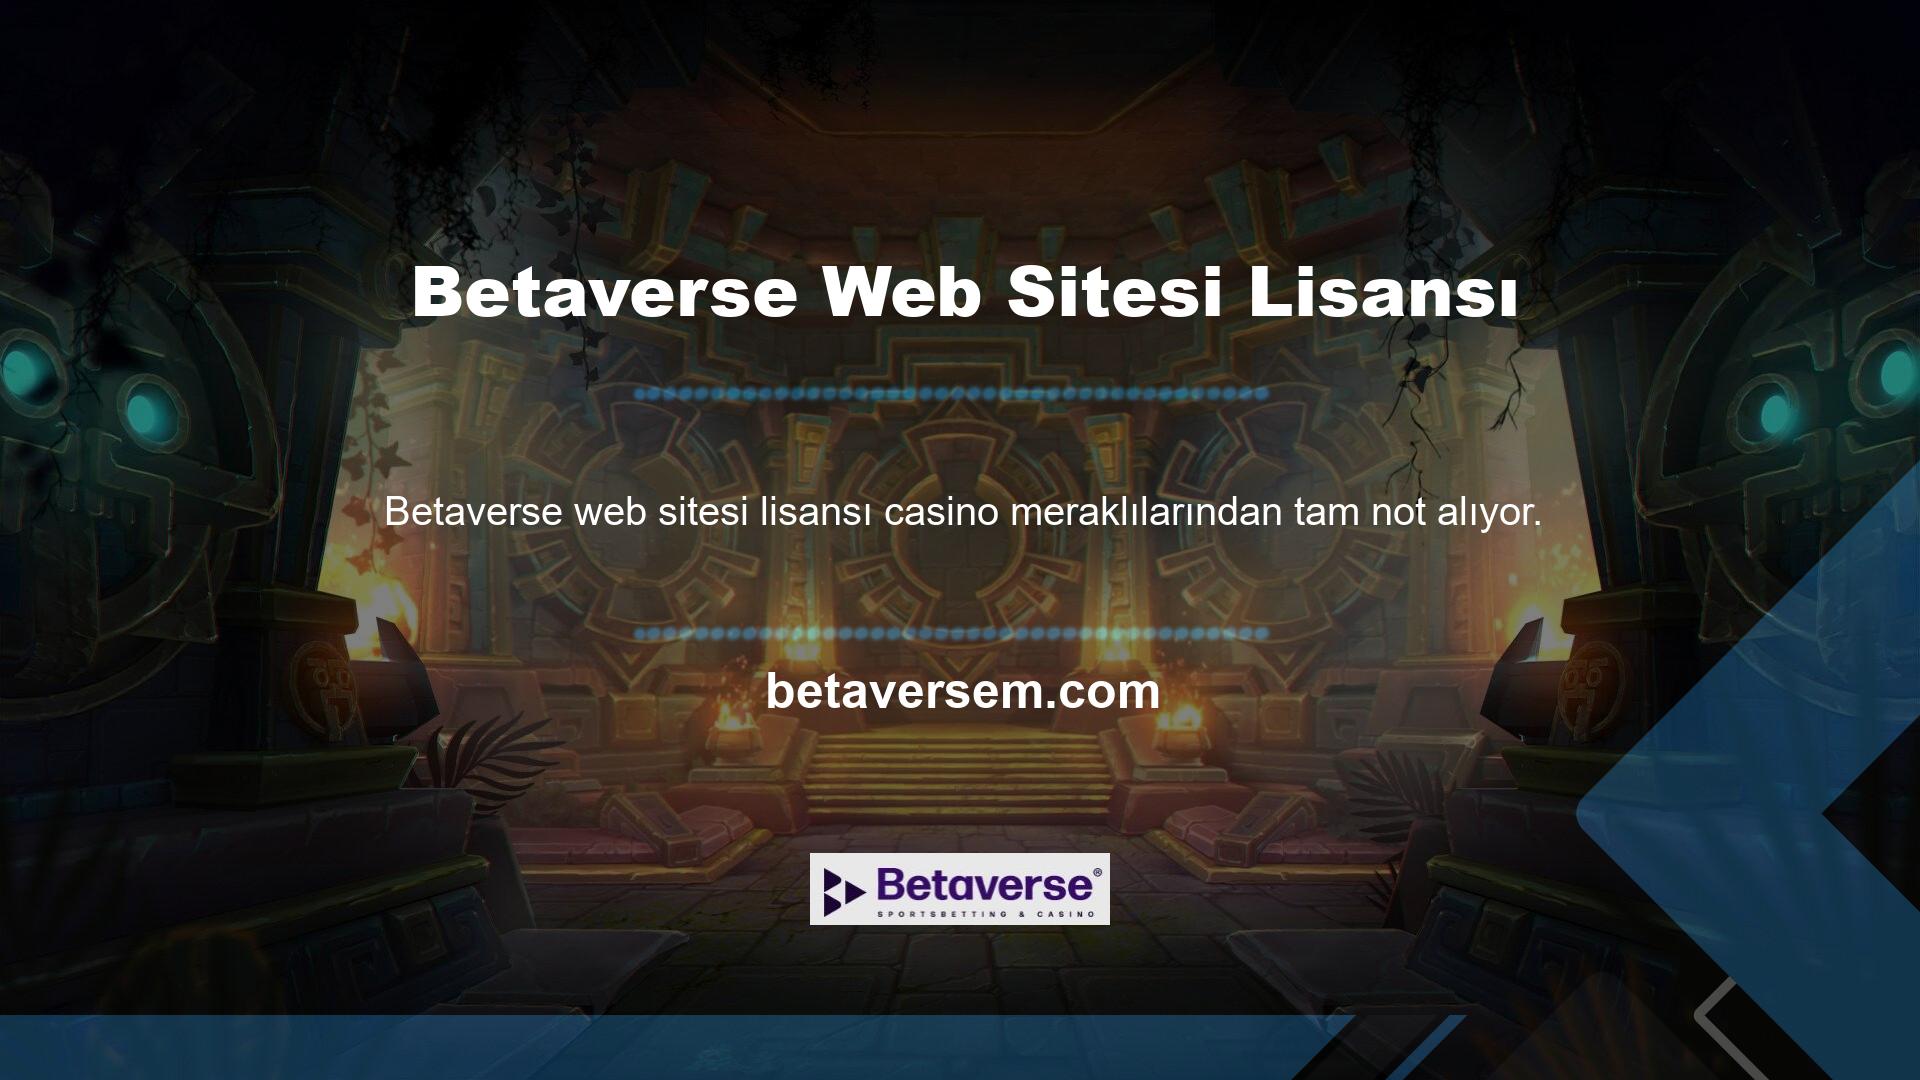 Bir casino sitesinin en önemli temasının güven olduğu felsefesinden yola çıkan Betaverse, kullanıcılarına her zaman güven vermiştir